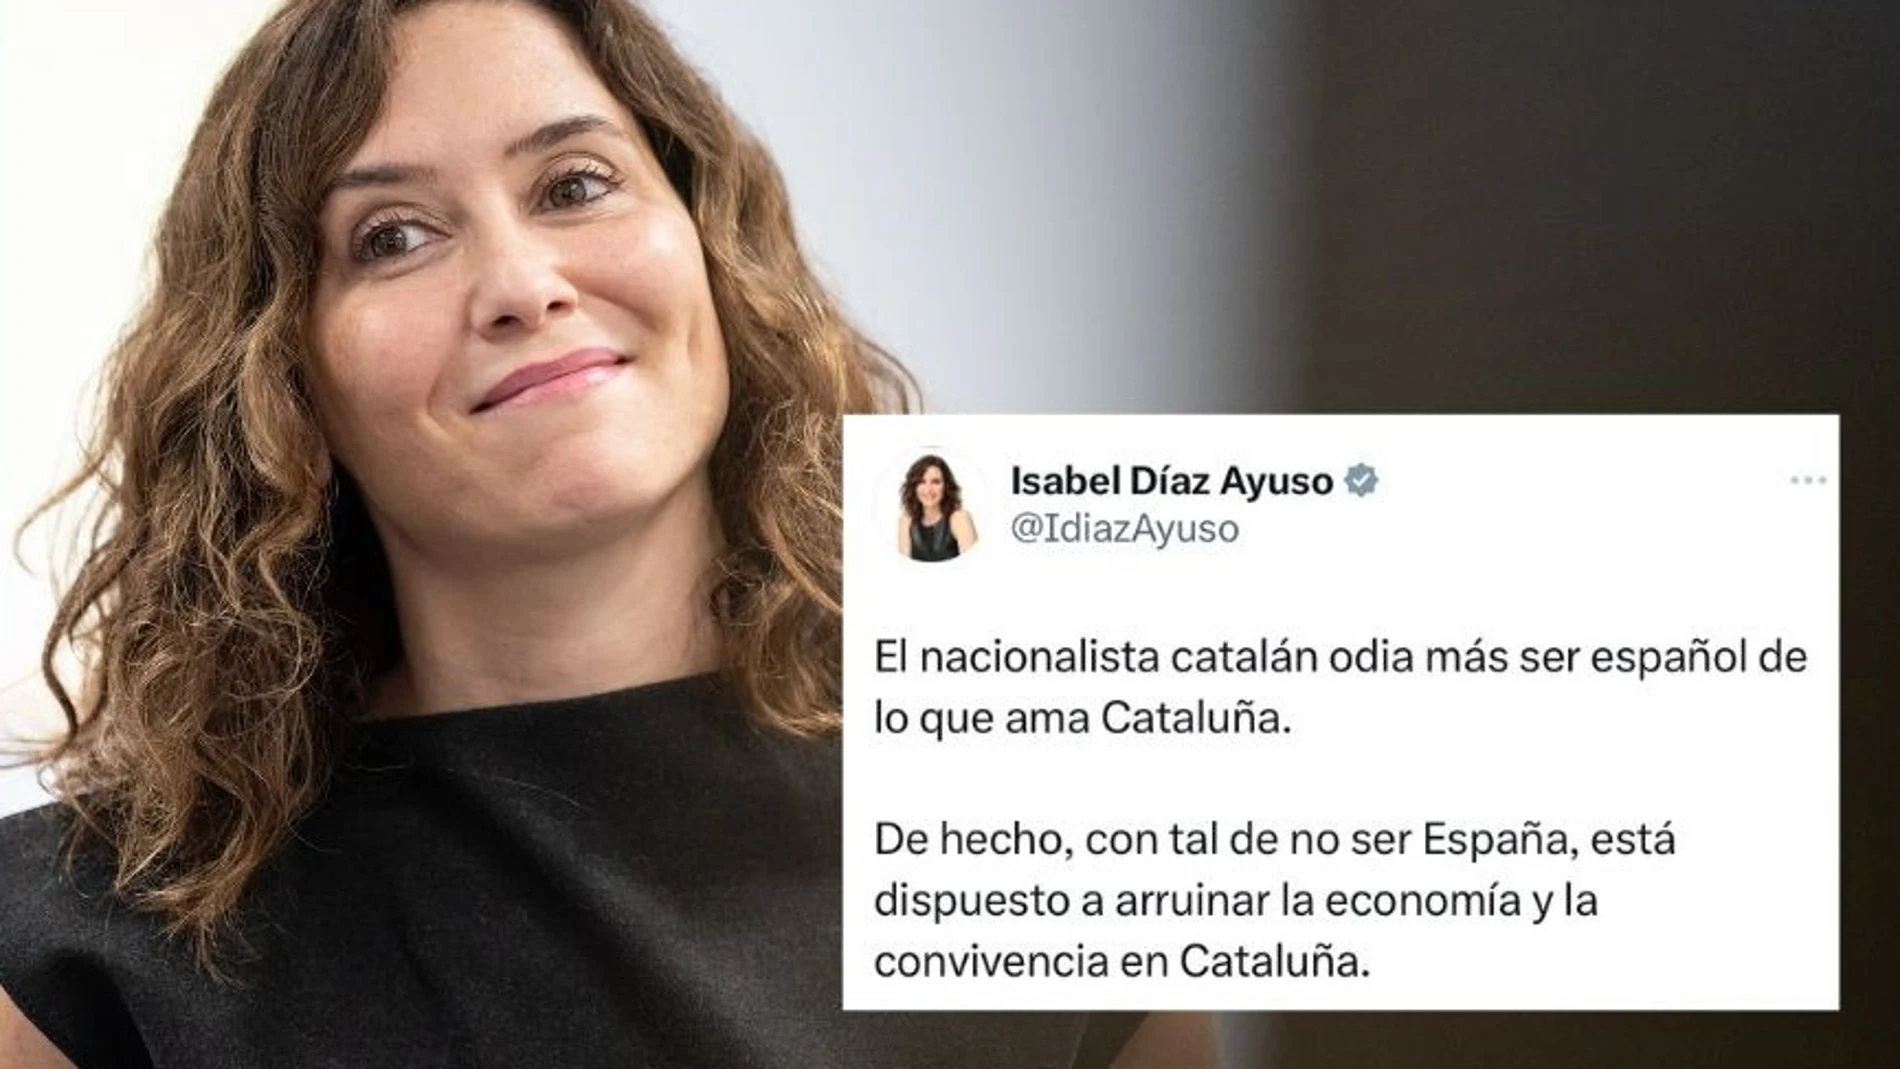 Ayuso: "El nacionalista catalán odia más ser español de lo que ama Cataluña"